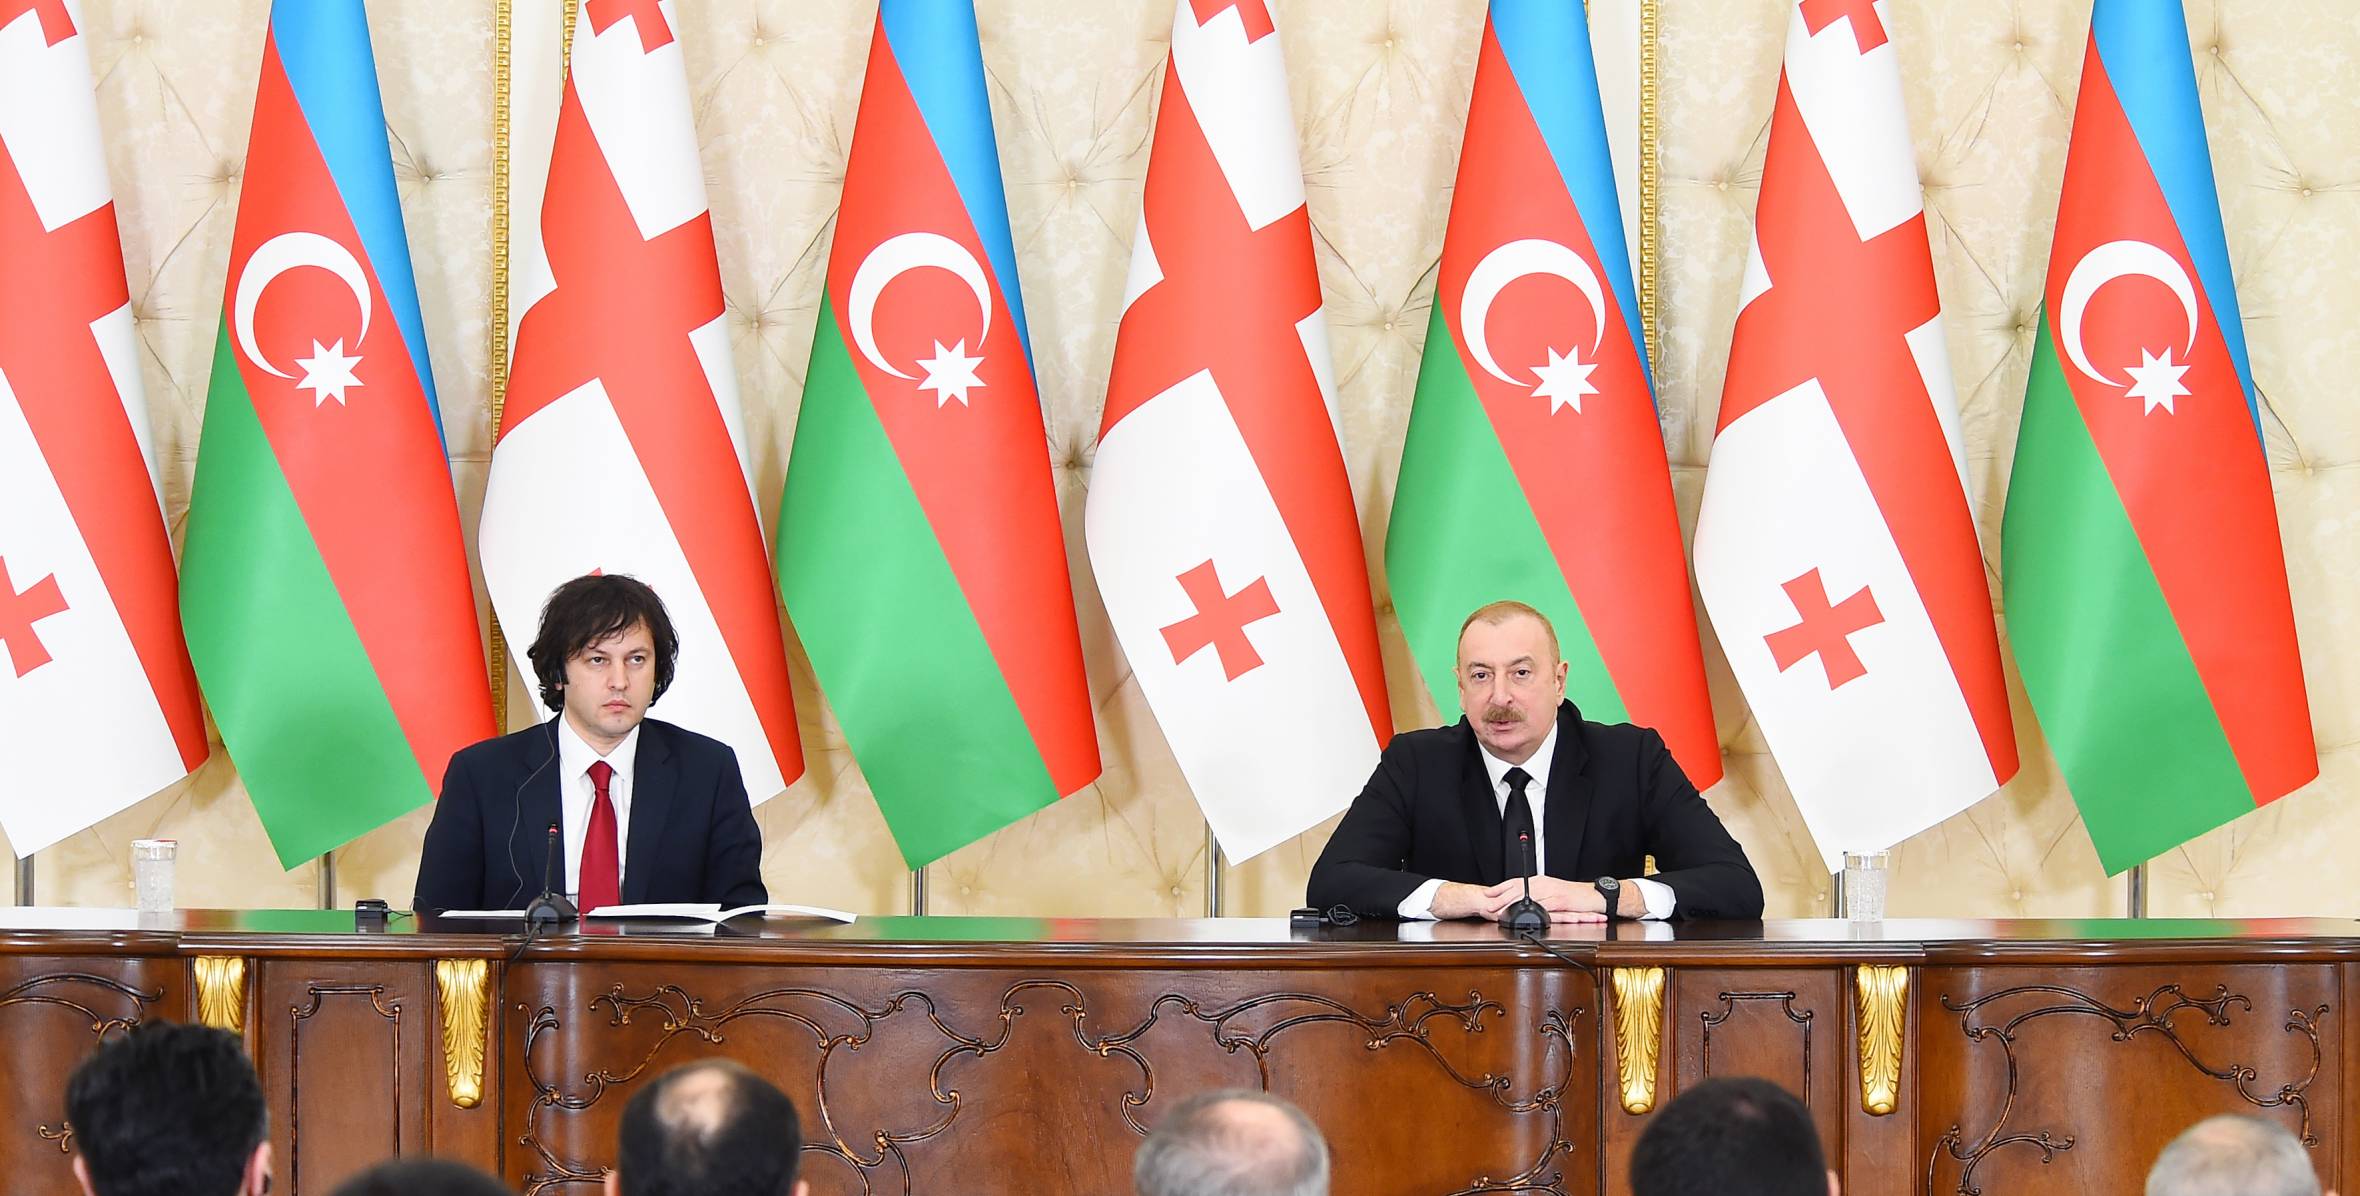 Ильхам Алиев и премьер-министр Грузии Ираклий Кобахидзе выступили с заявлениями для прессы